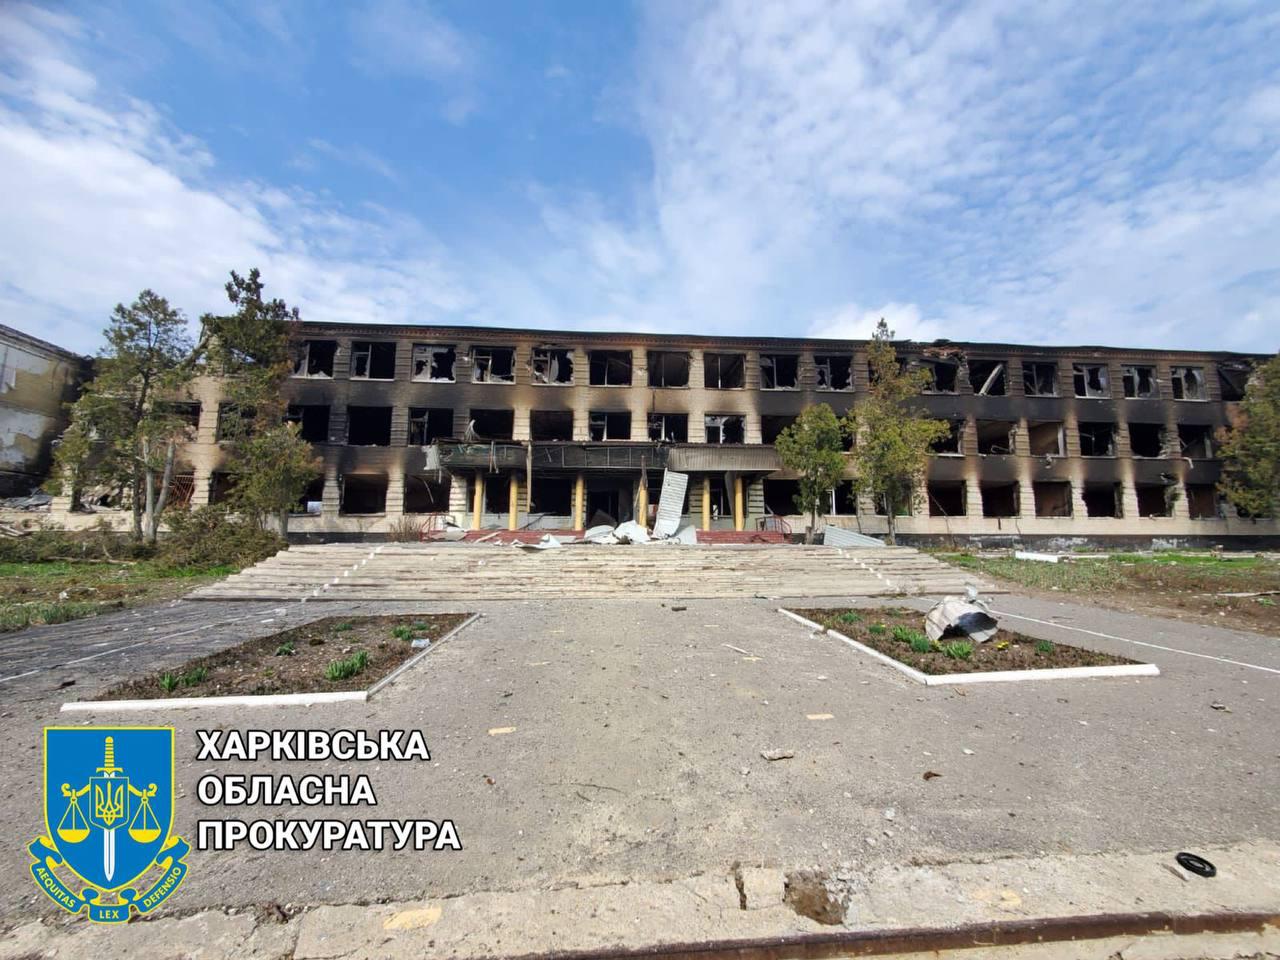 Звільнена Вільхівка на Харківщині майже повністю знищена окупантами - розпочато розслідування